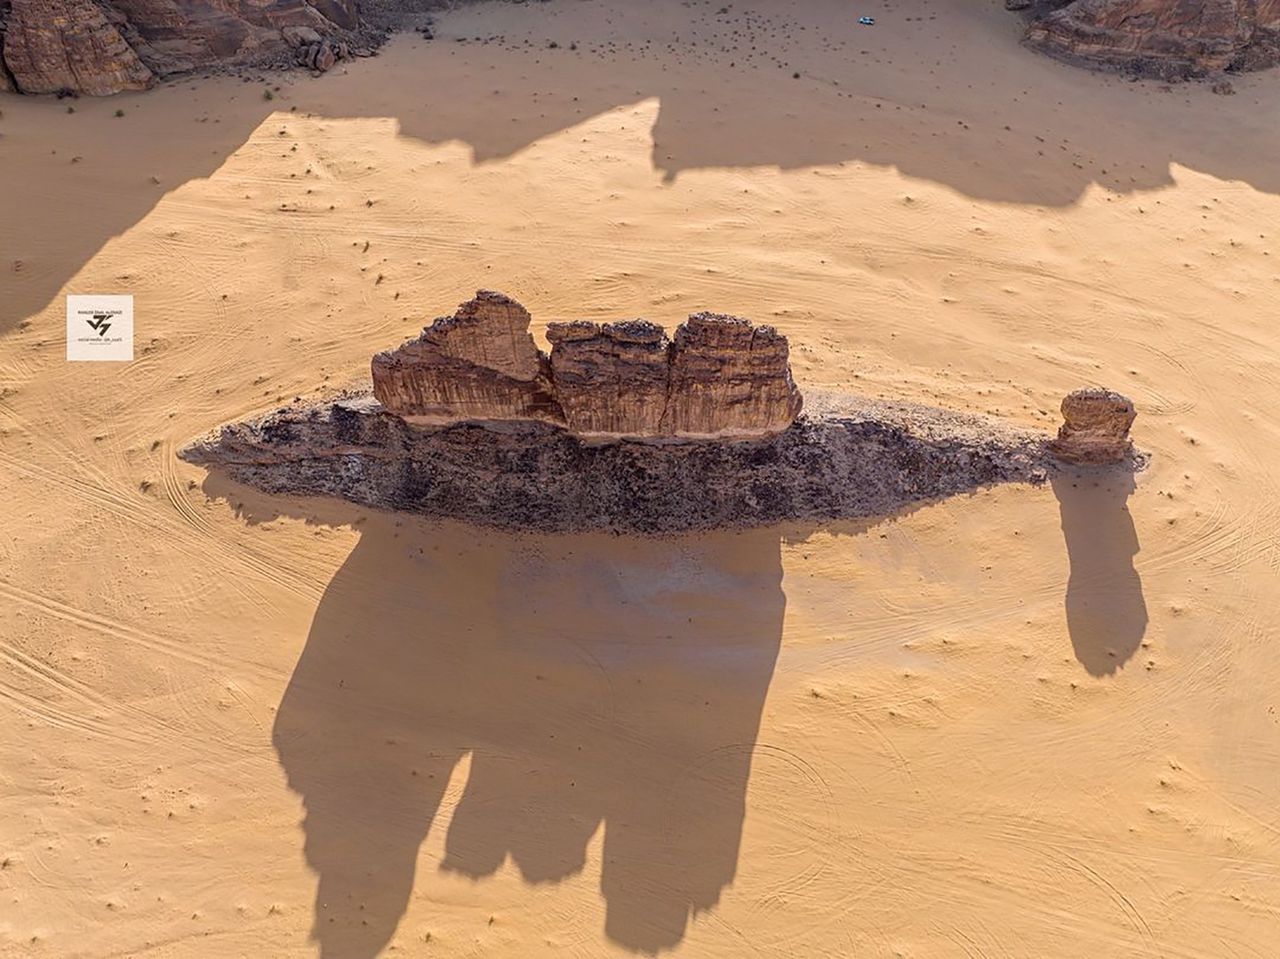 Skała w kształcie ryby na pustyni w Arabii Saudyjskiej.